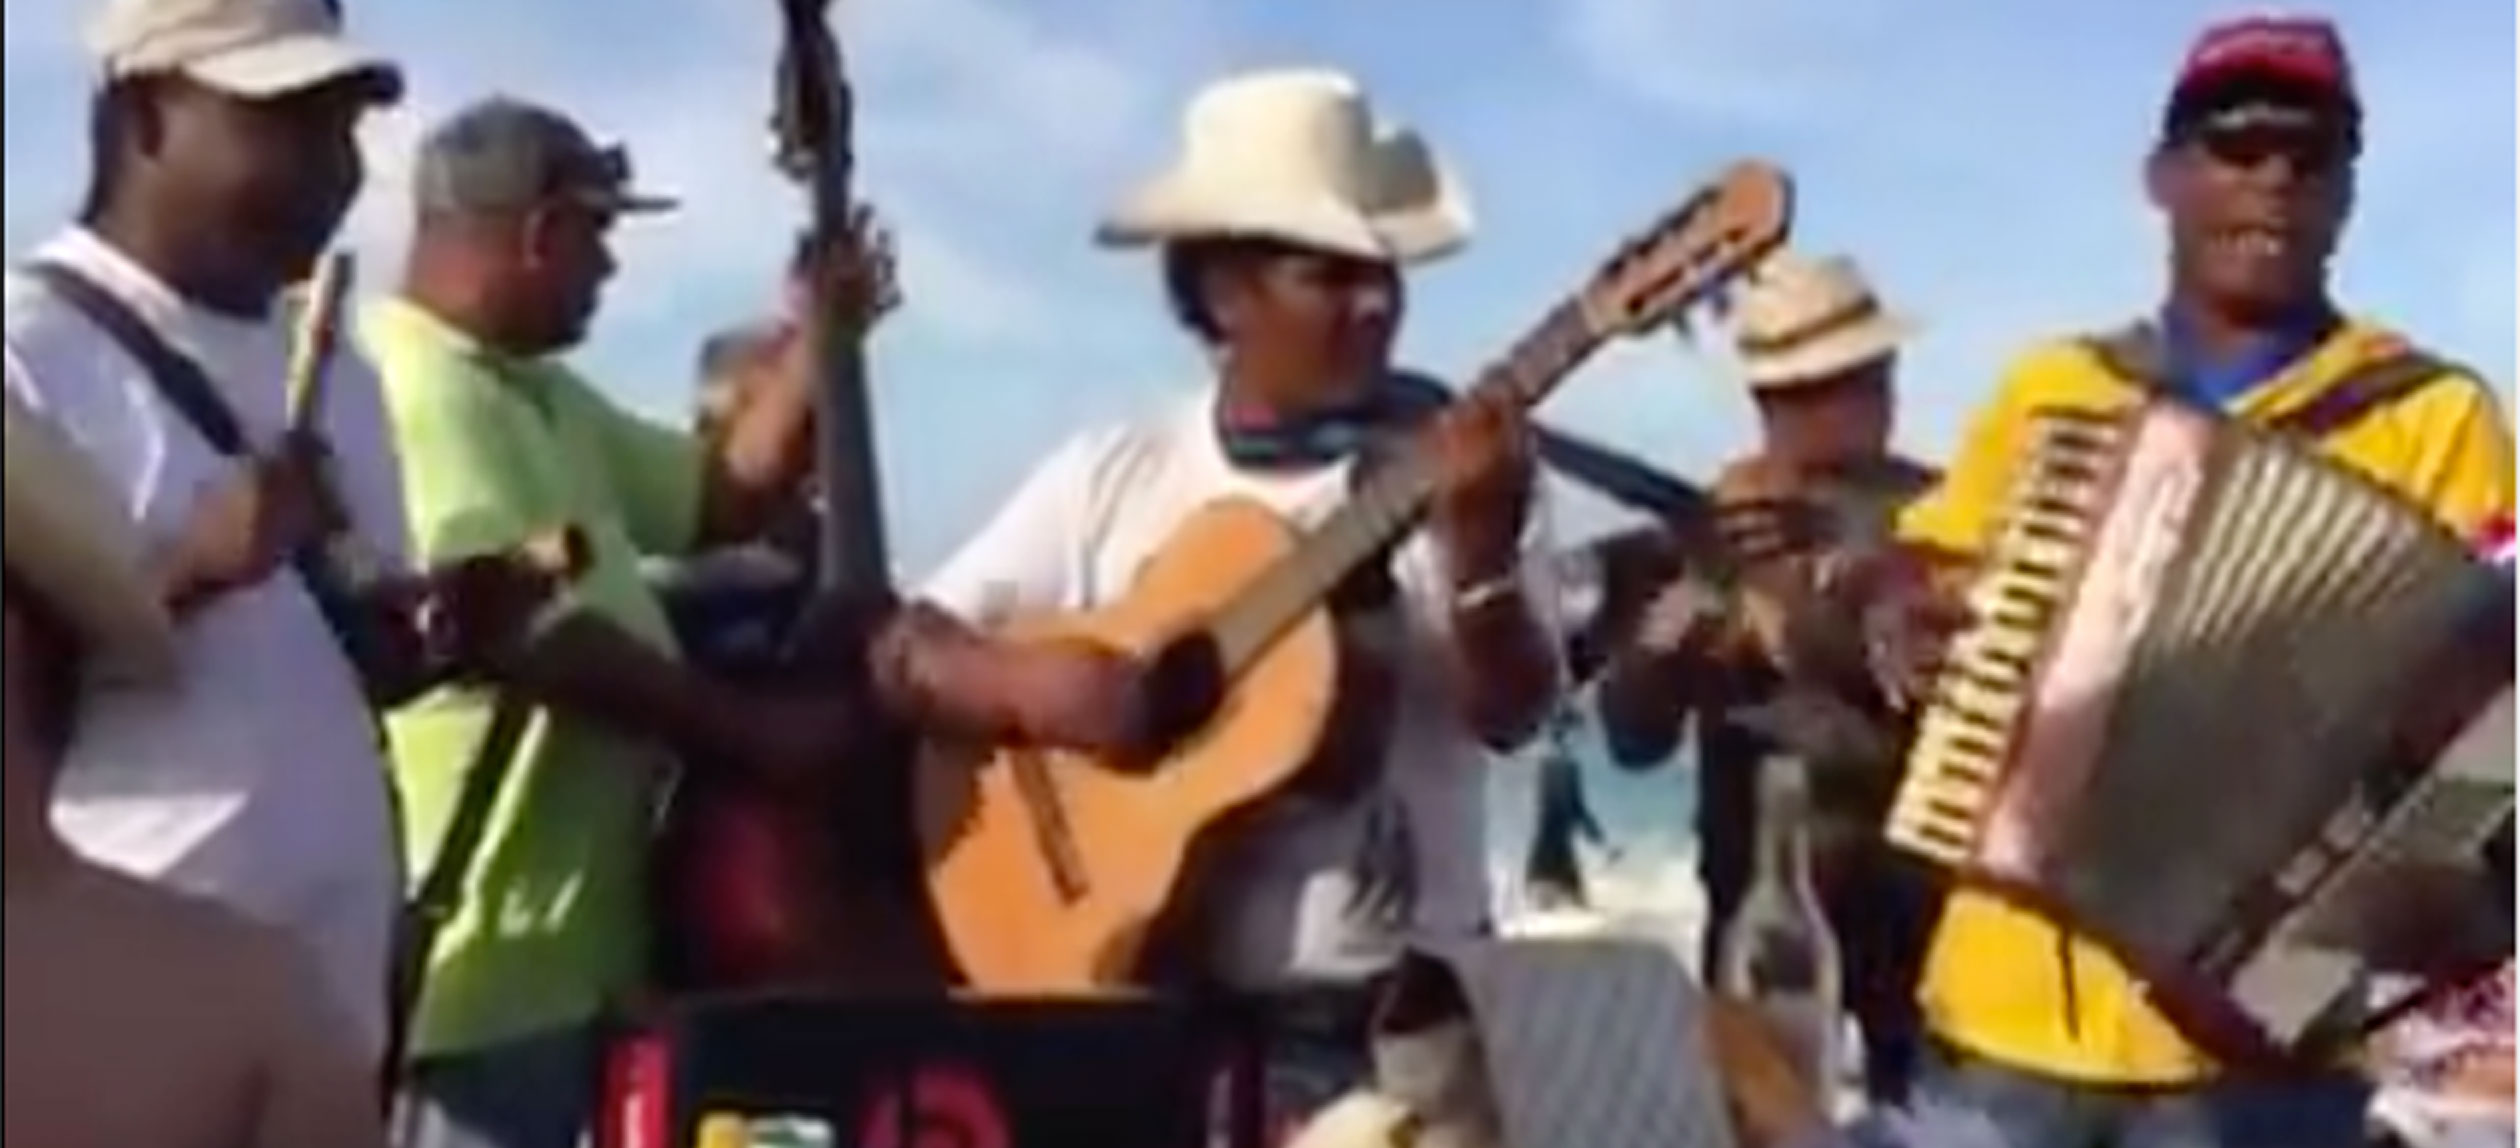 Grupo cubano interpreta canciones gruperas